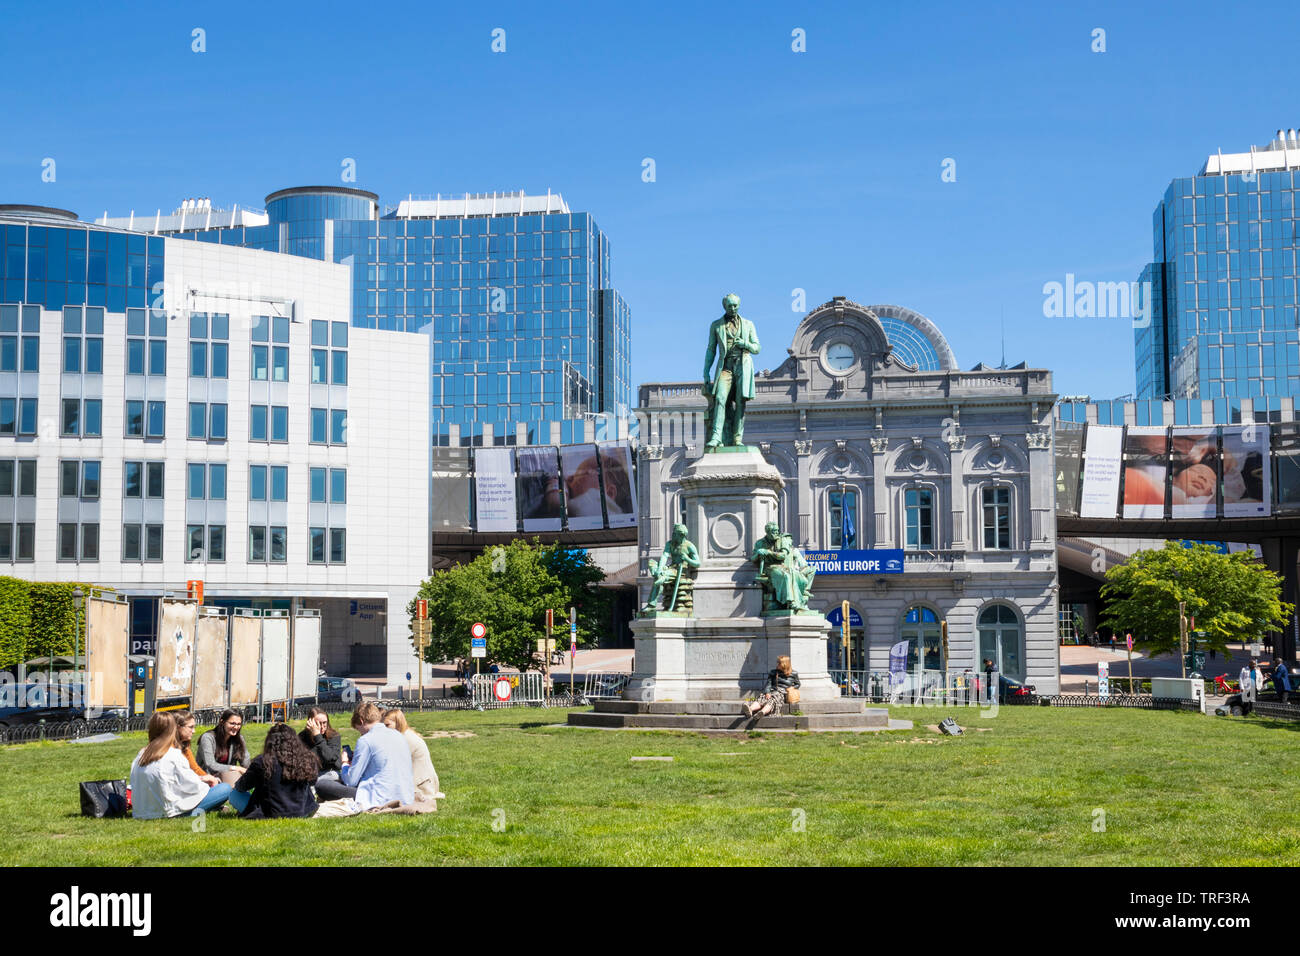 Les gens sur l'herbe à la place du Luxembourg Luxembourg PLUX Square Place du Luxembourg Bruxelles statue de John Cockerill Bruxelles Belgique eu Europe Banque D'Images